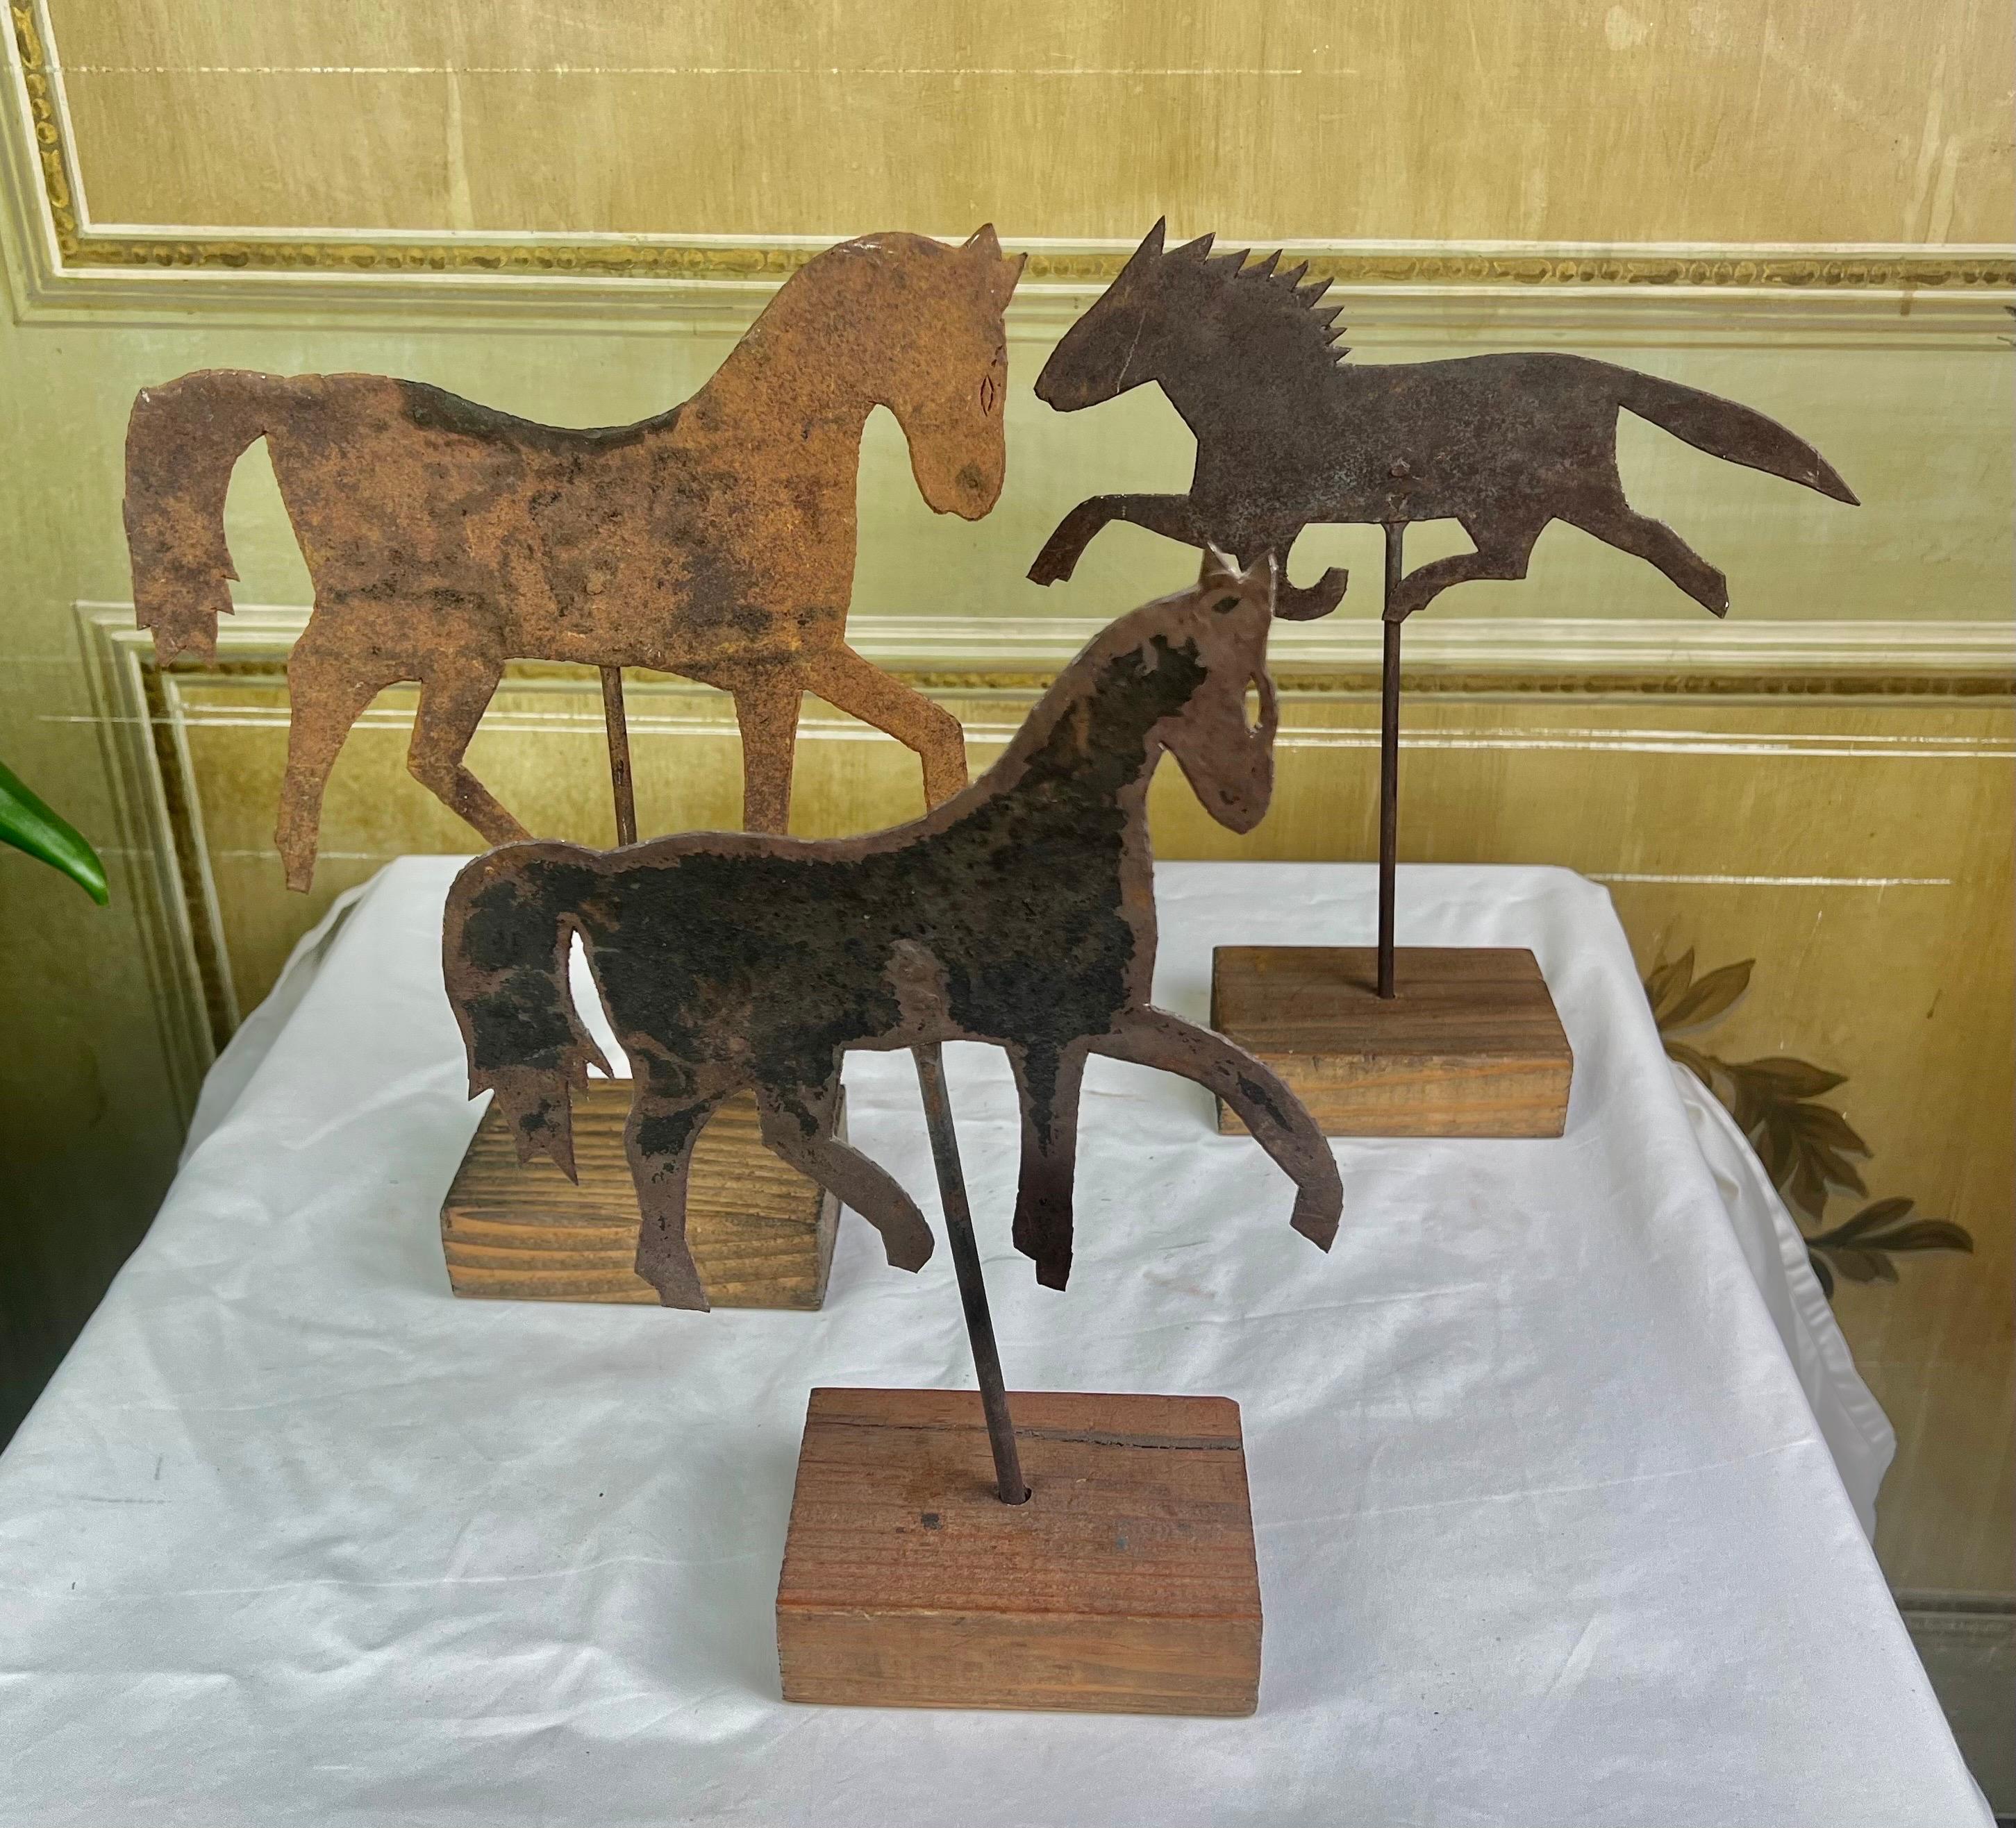 Ensemble de trois chevaux en métal montés sur des bases en bois. Ces charmants chevaux sont issus de la même Collectional.

Tailles :
1) 13,5 